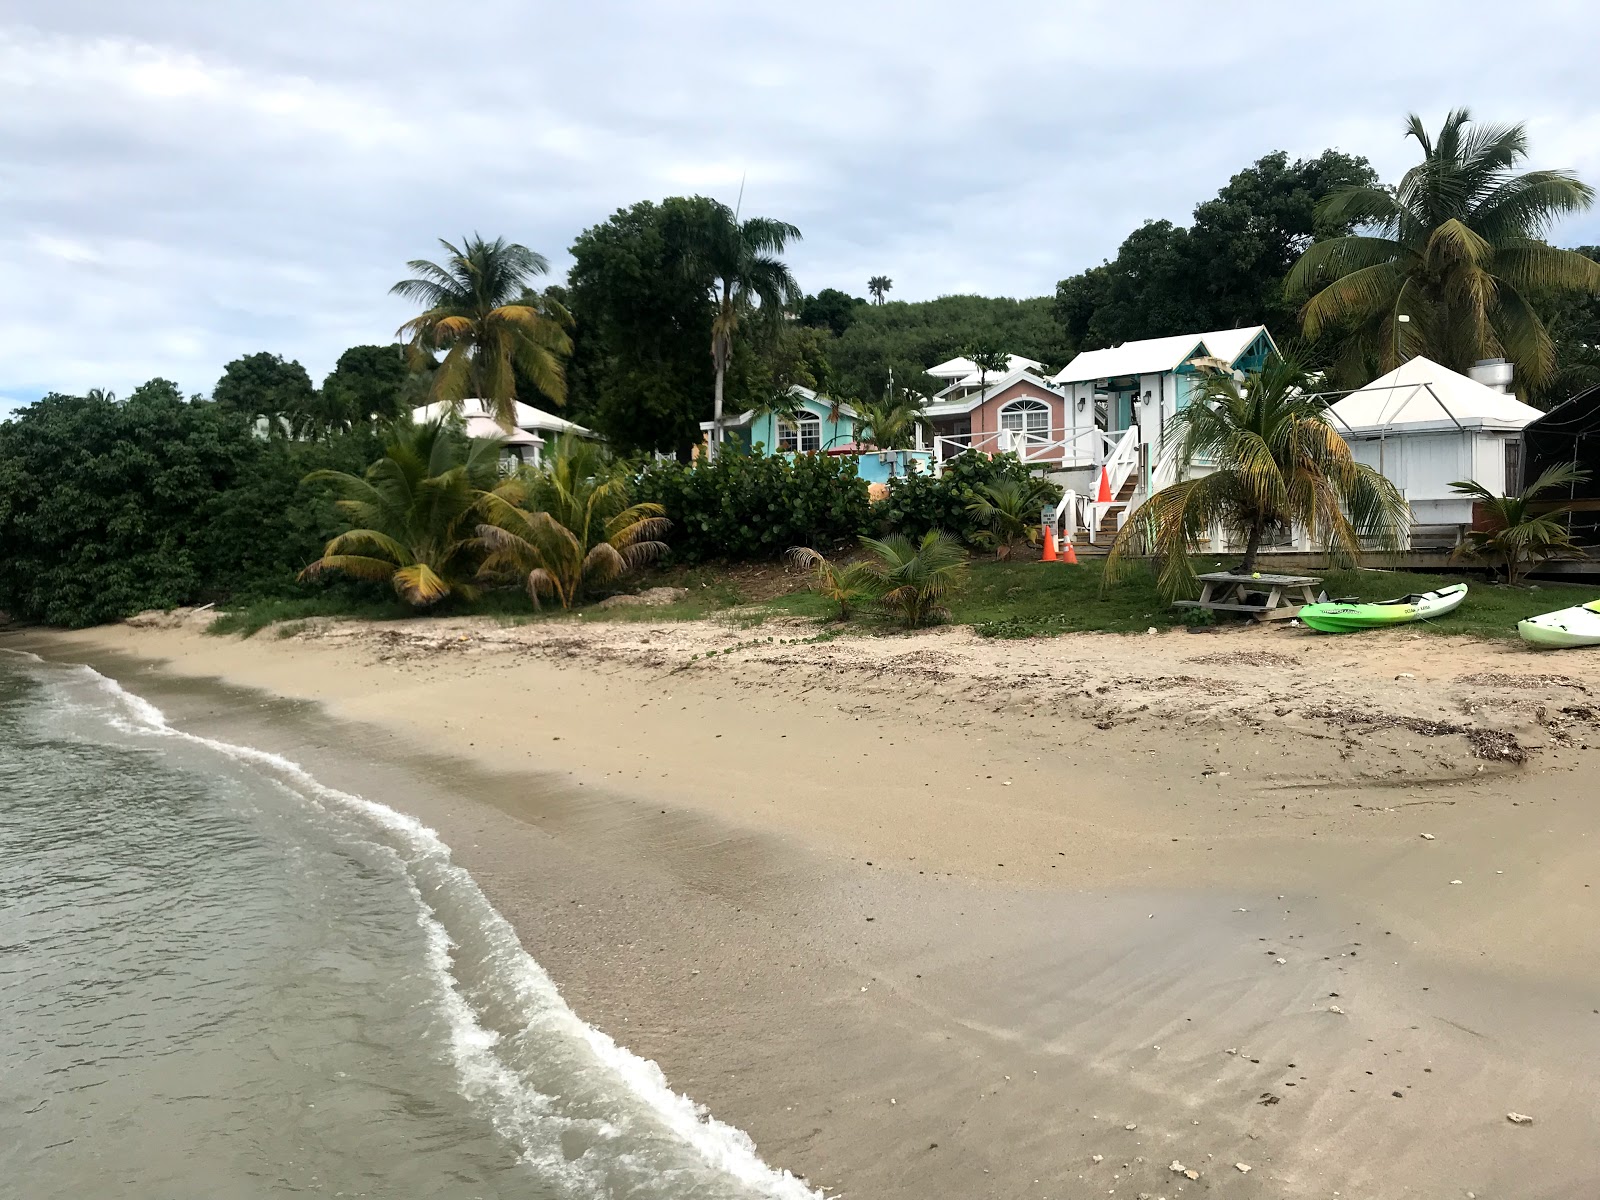 Foto af St. Croix Chenay beach - populært sted blandt afslapningskendere